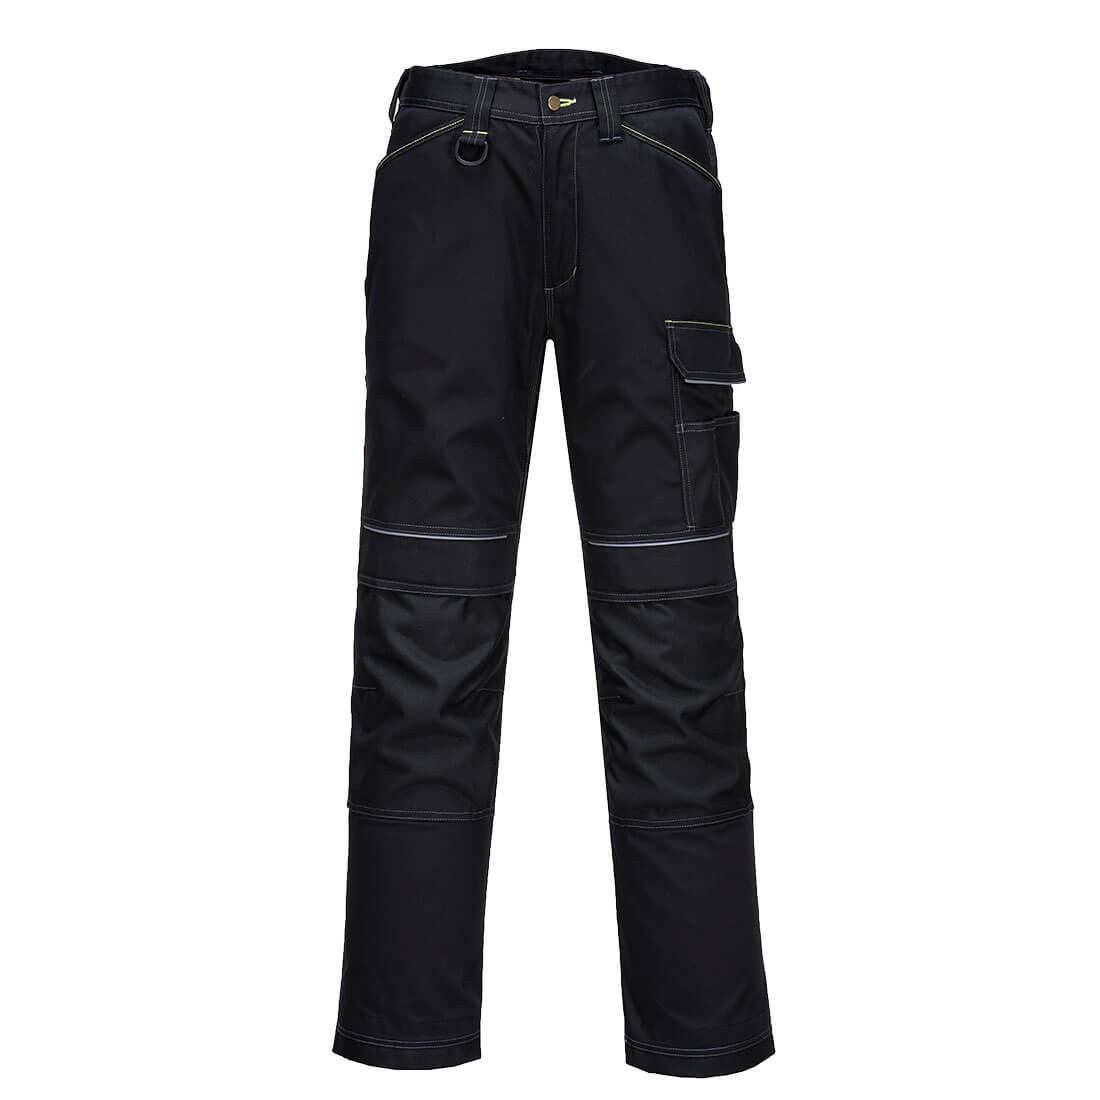 Pantalón elástico y ligero PW3 - Ropa de protección